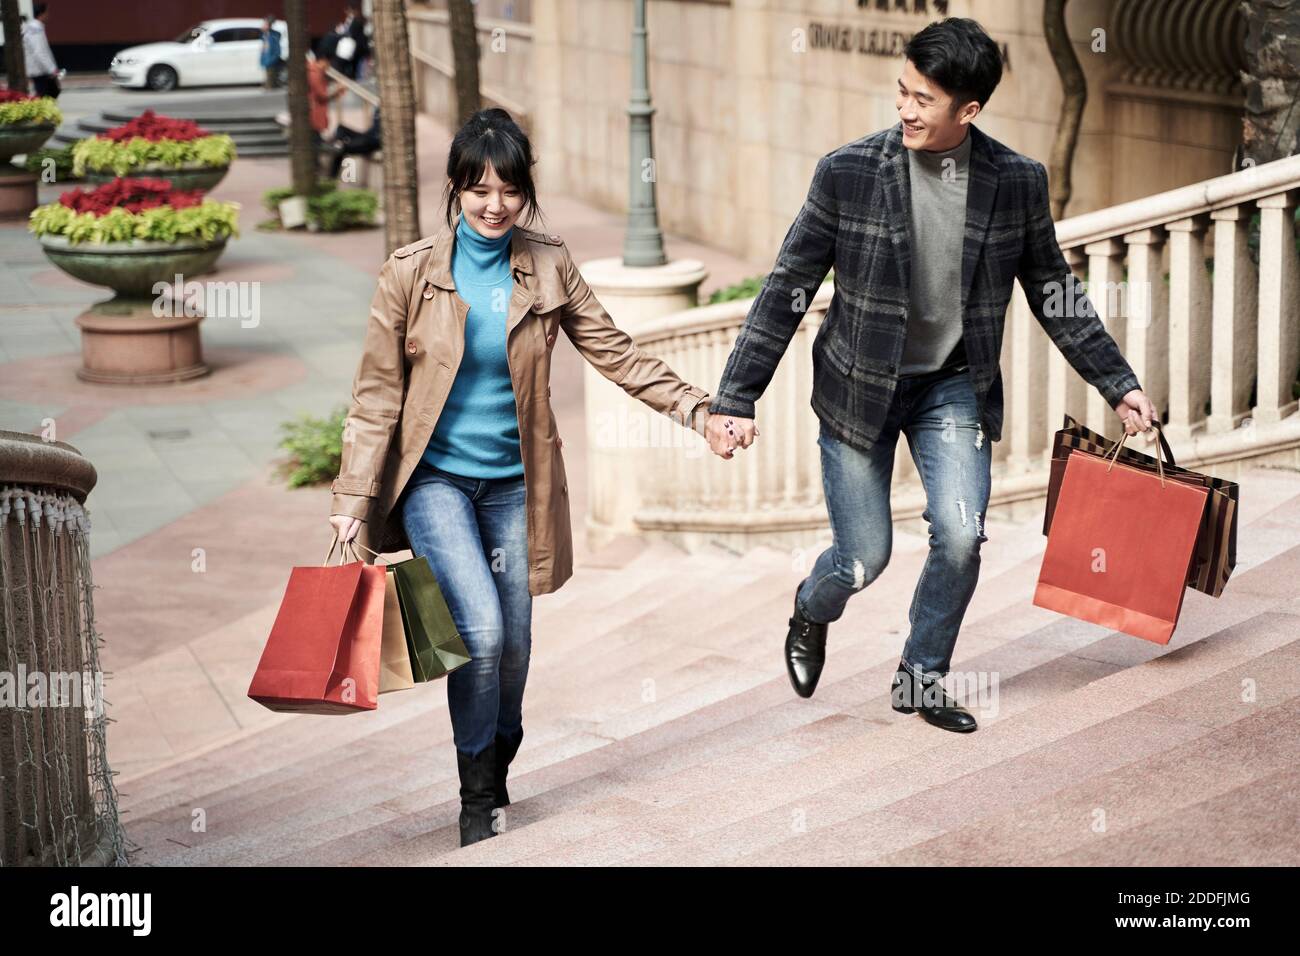 Junges asiatisches Paar mit Einkaufstaschen, die Hände halten, die auf Stufen gehen, glücklich und lächelnd Stockfoto